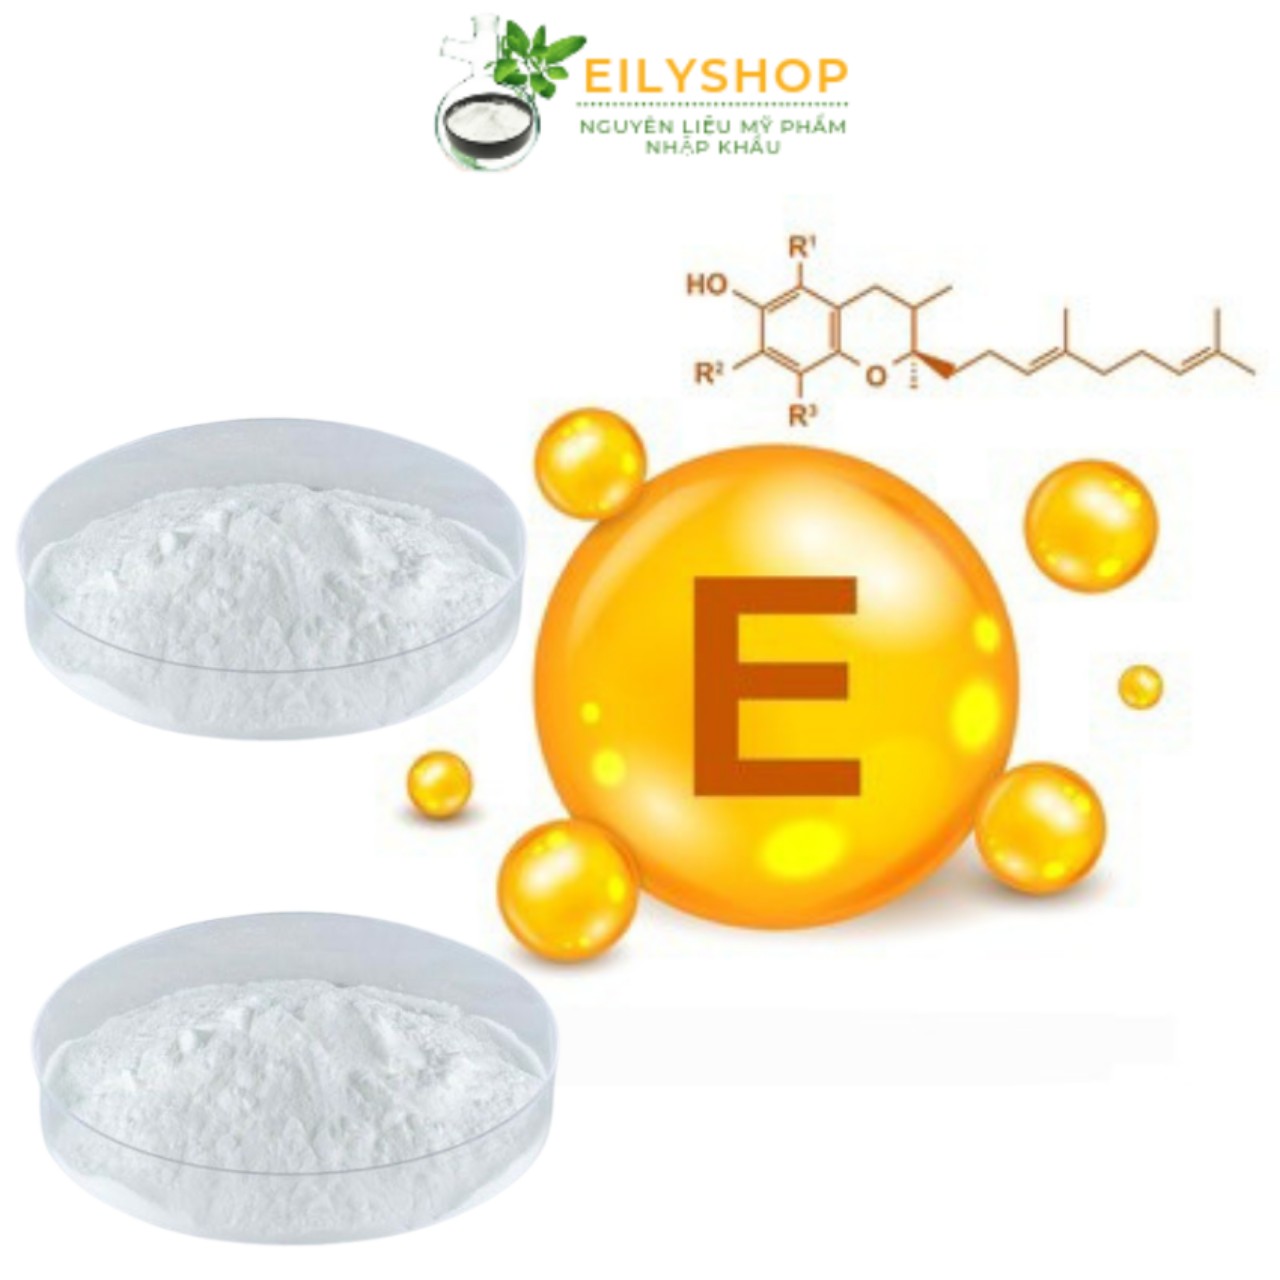 Bột Vitamin E - Bột làm đẹp, Nguyên liệu Dược - Mỹ Phẩm - nguyên liệu mỹ phẩm Nhập Khẩu Eilyshop